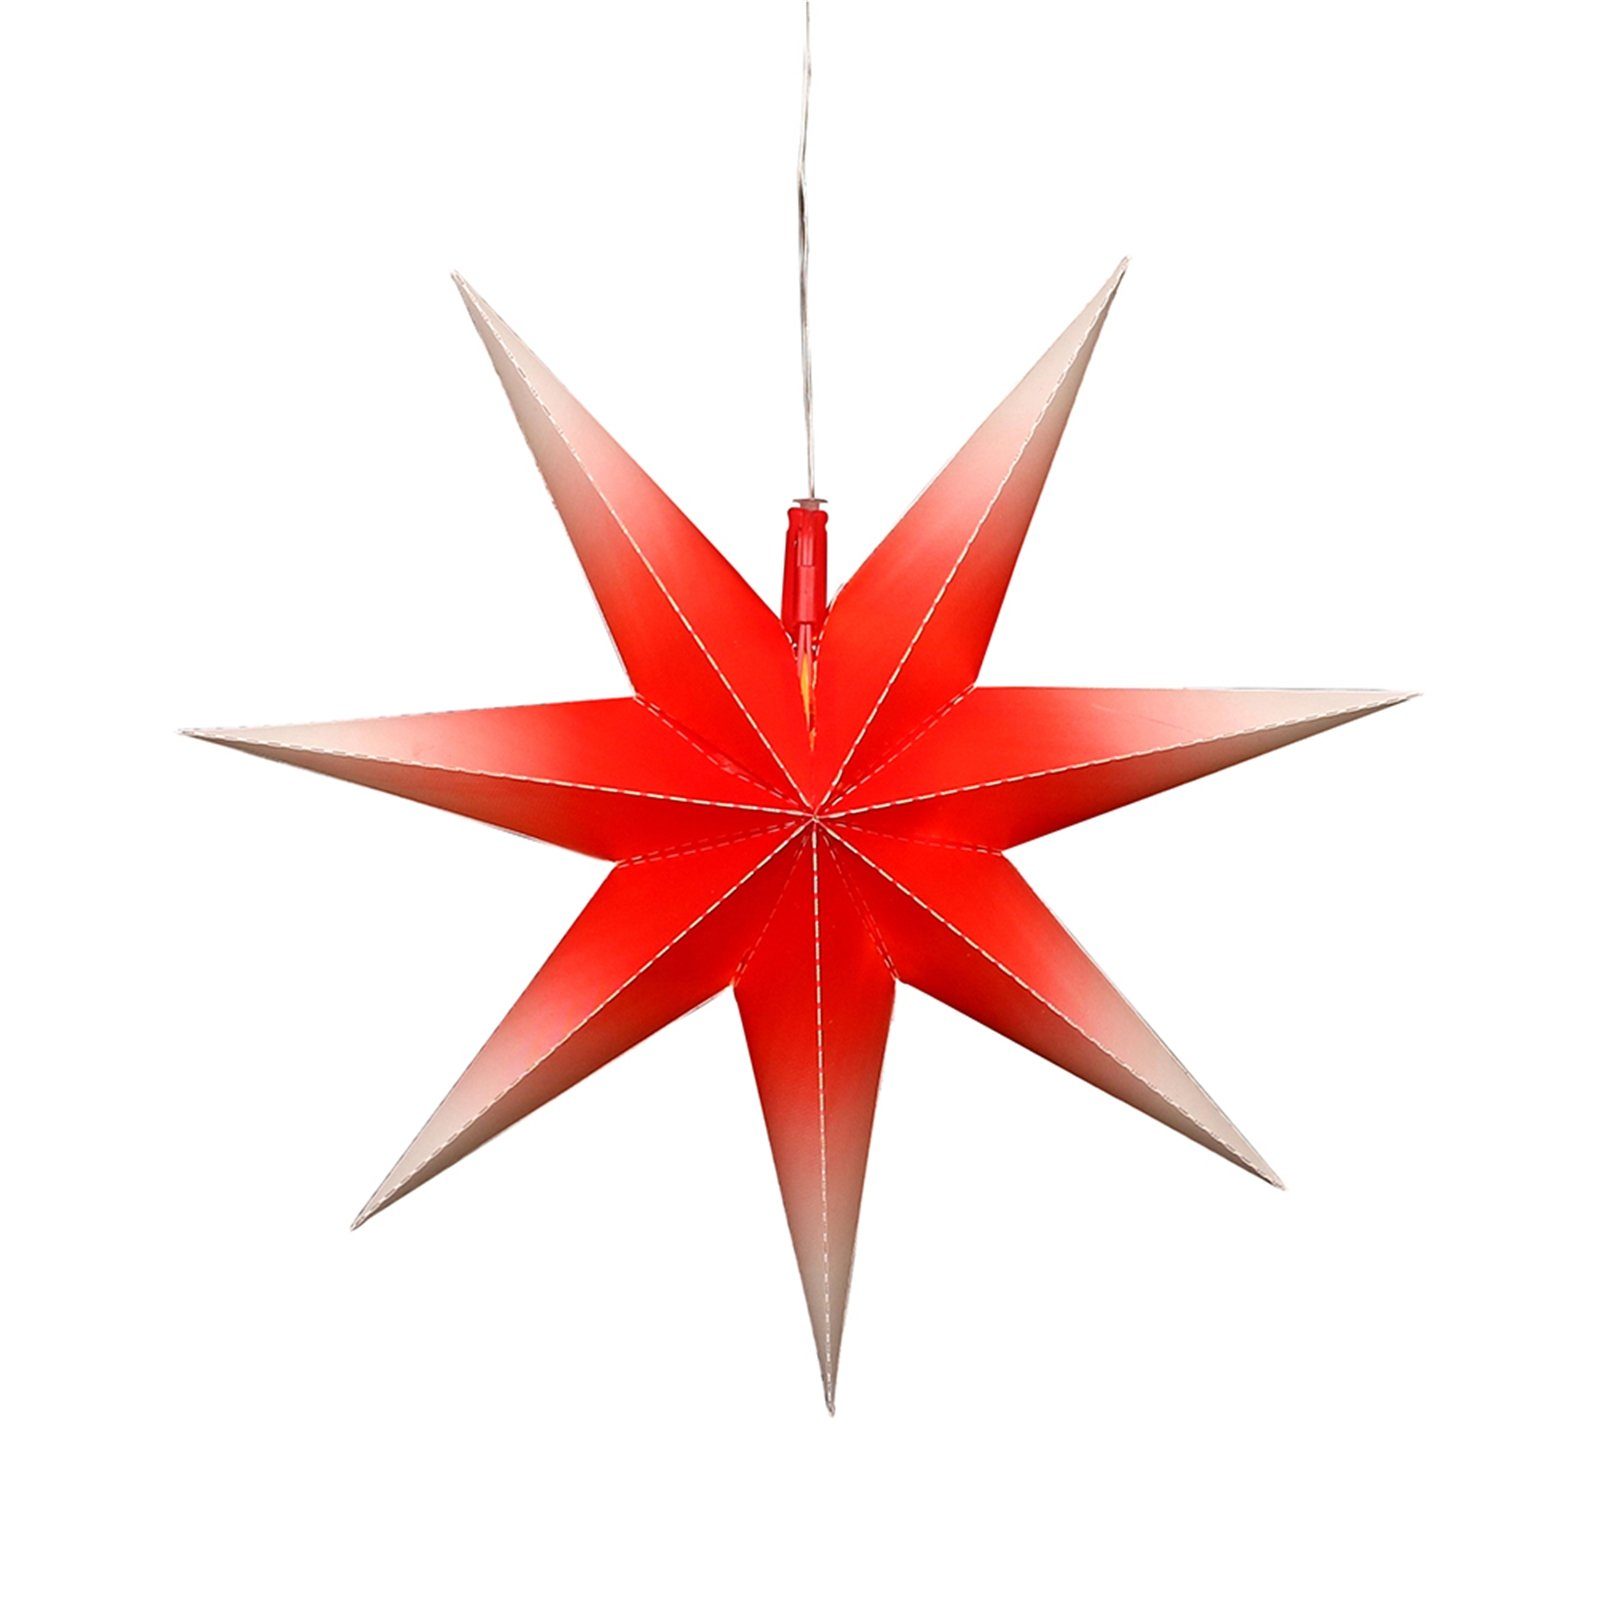 SIGRO LED Stern Weihnachtsstern mit 7 Spitzen Rot/Weiß, LED, Fensterstern beleuchtet inkl. Netzteil